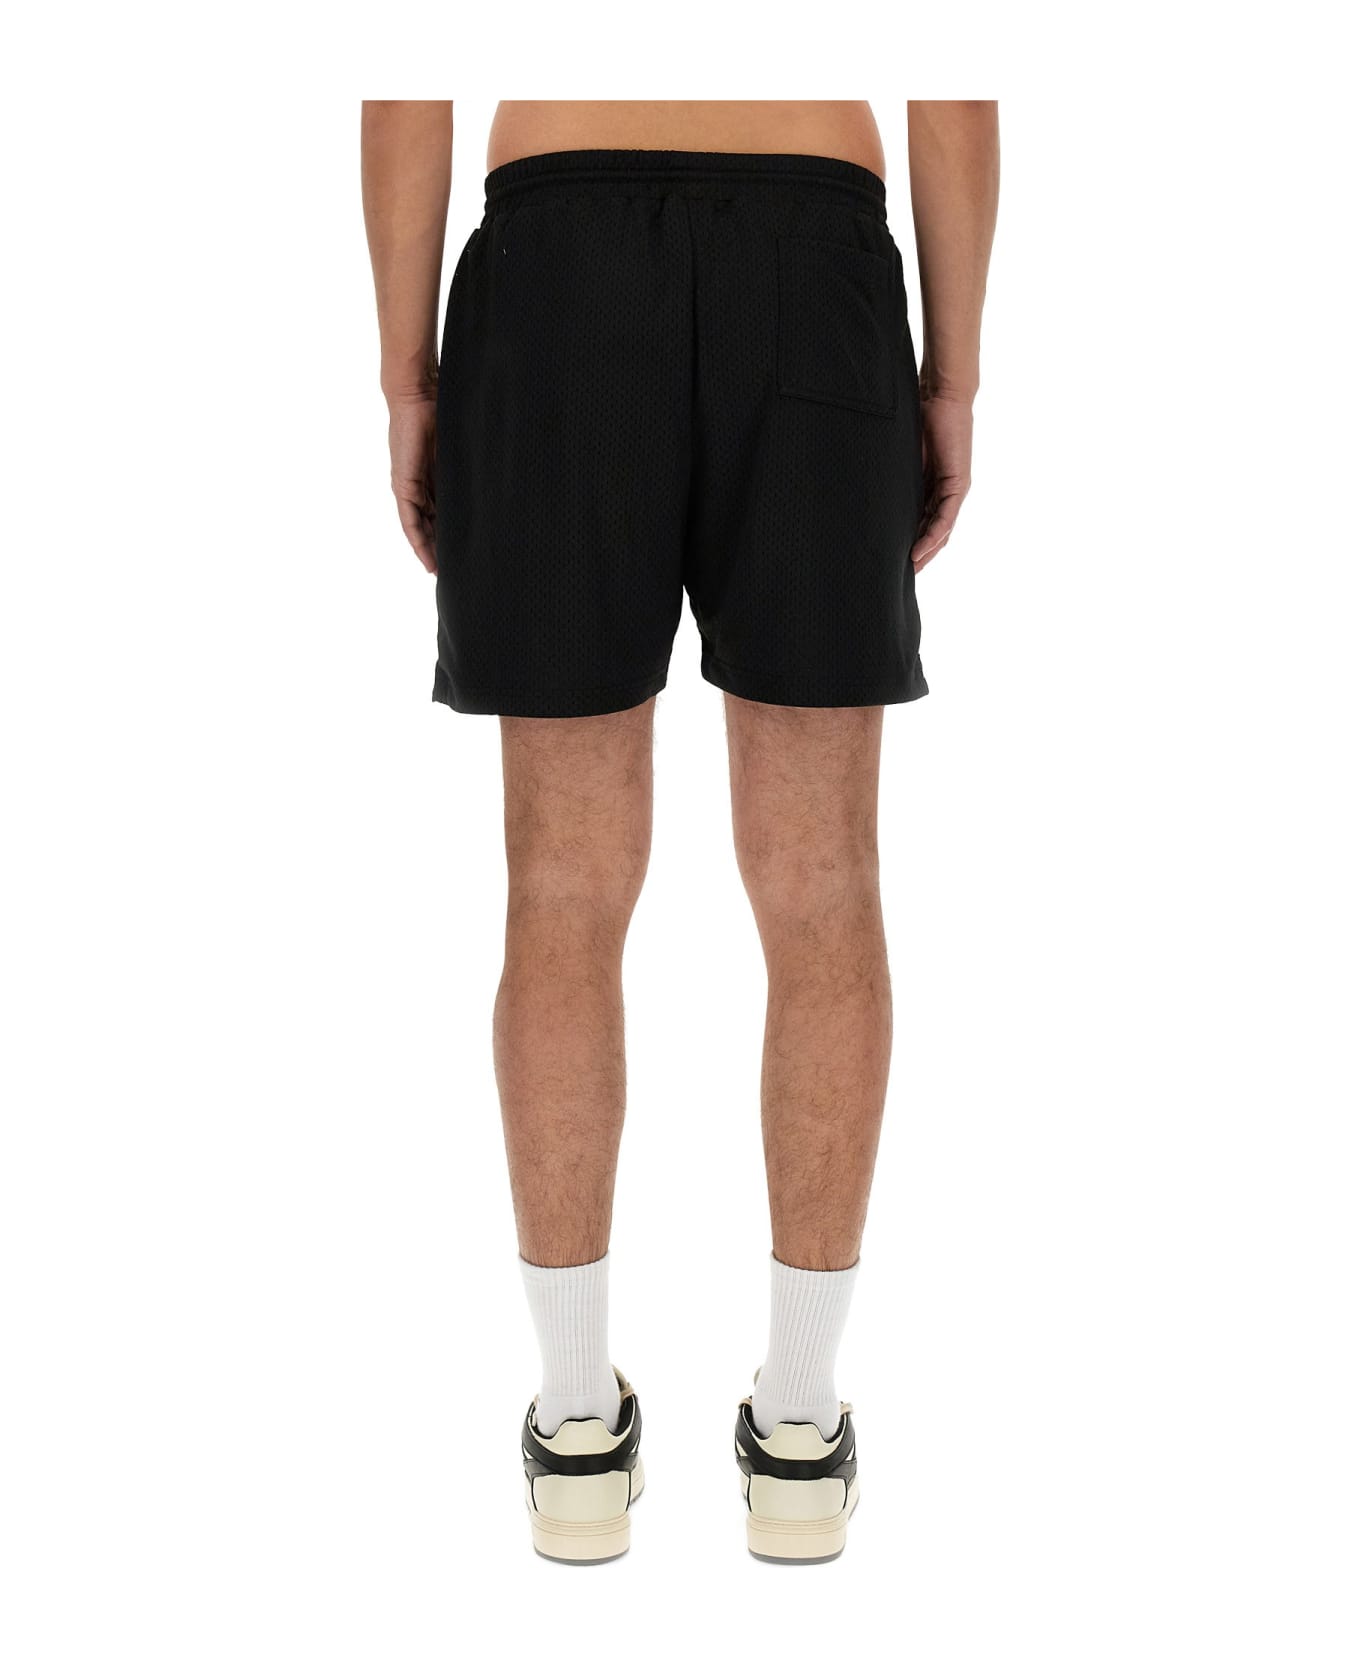 REPRESENT Mesh Bermuda Shorts - Black